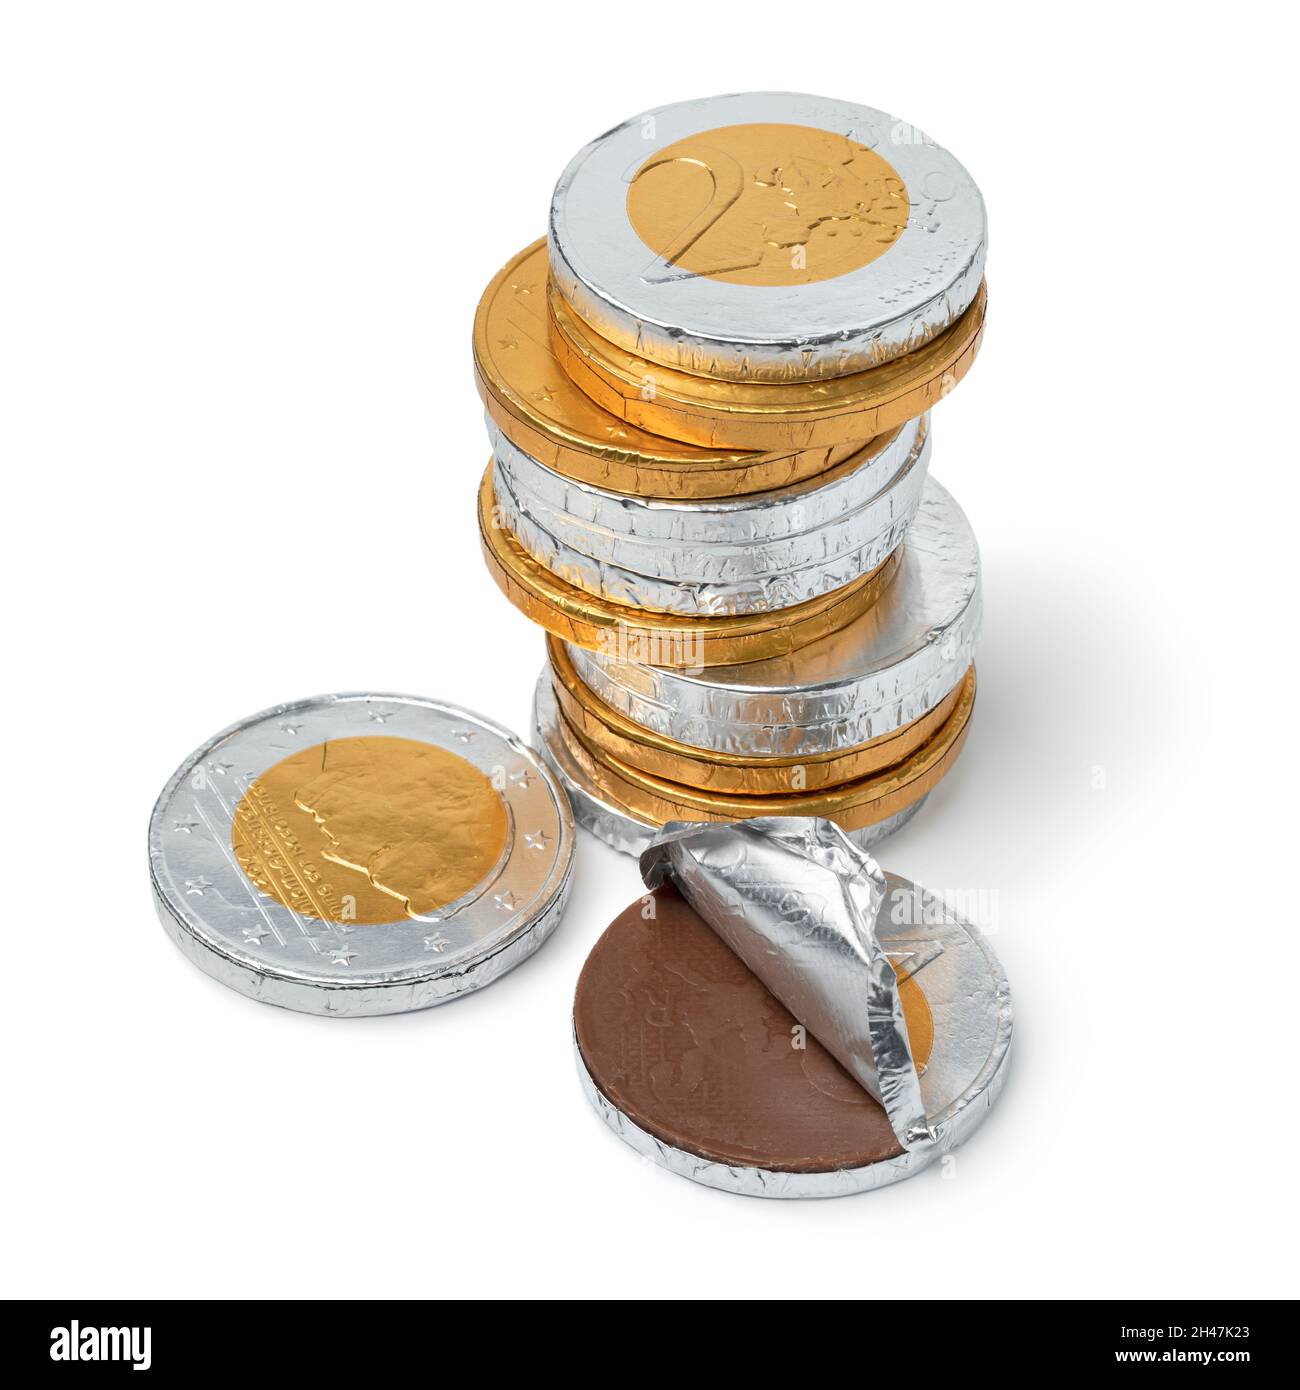 Haufen von goldenen und silbernen Schokoladenmünzen für die Feier von Sint Nicolaas Nahaufnahme auf weißem Hintergrund Stockfoto